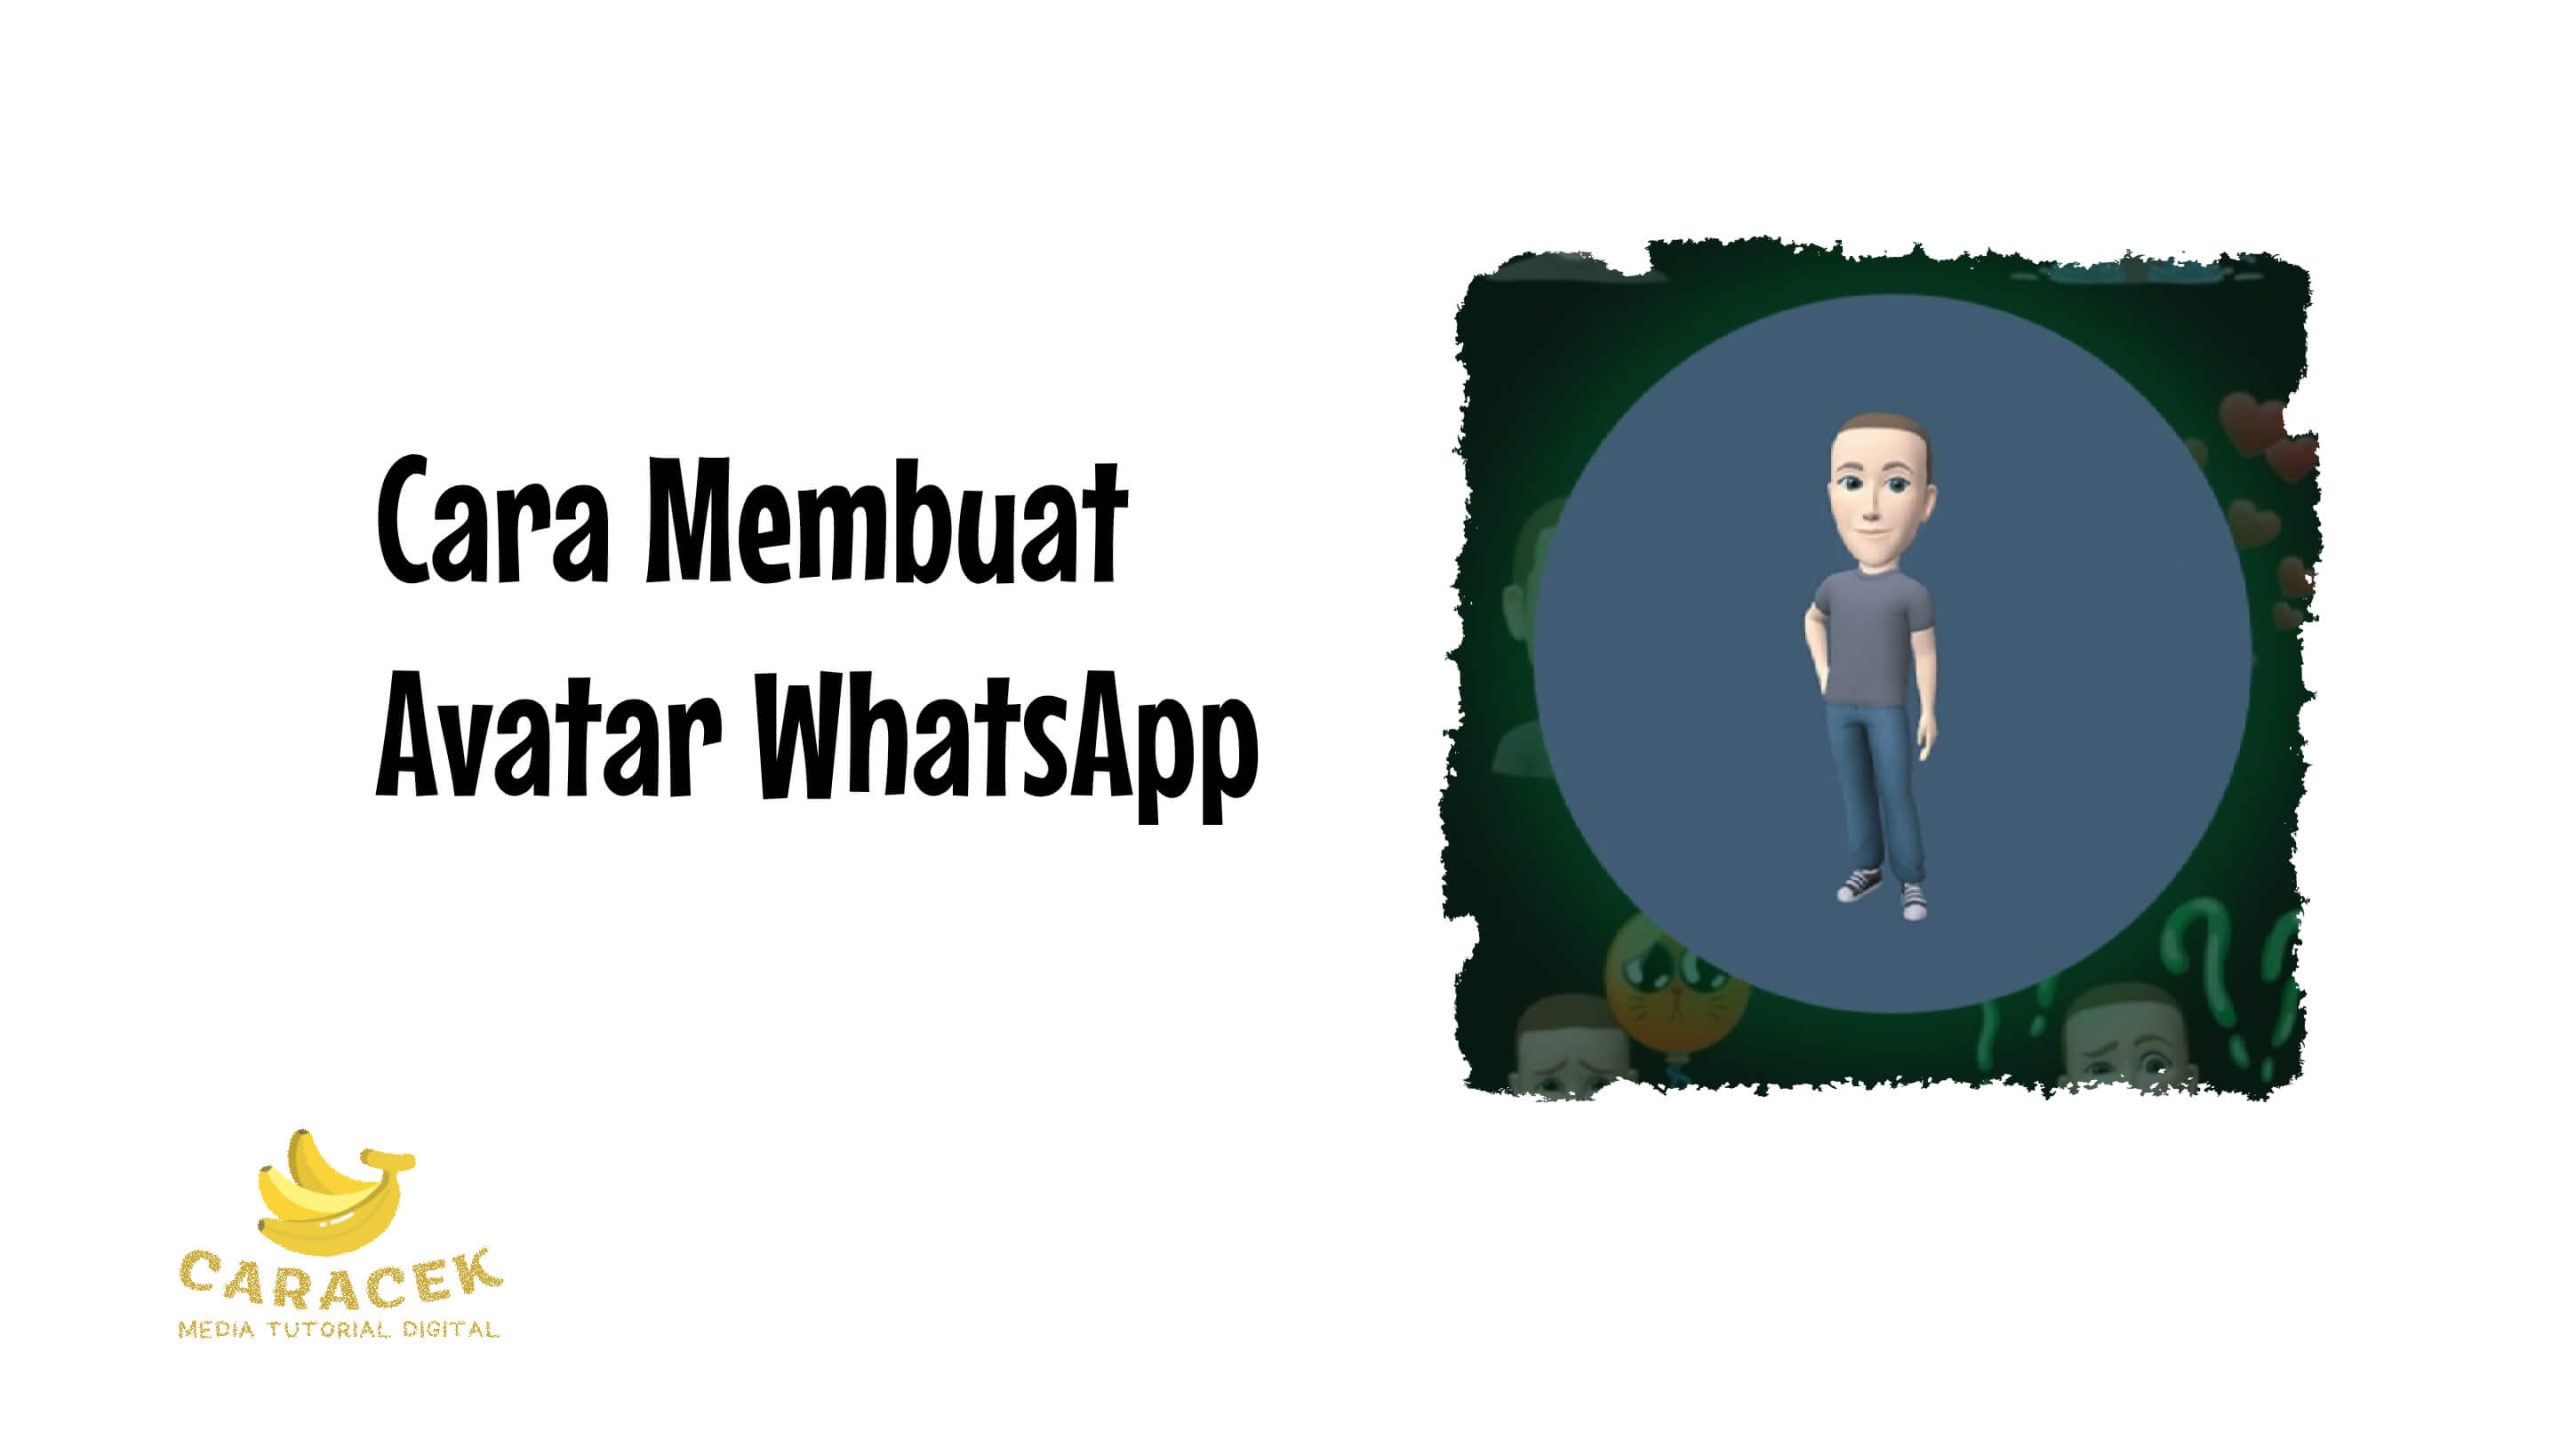 Cara Membuat Avatar WhatsApp